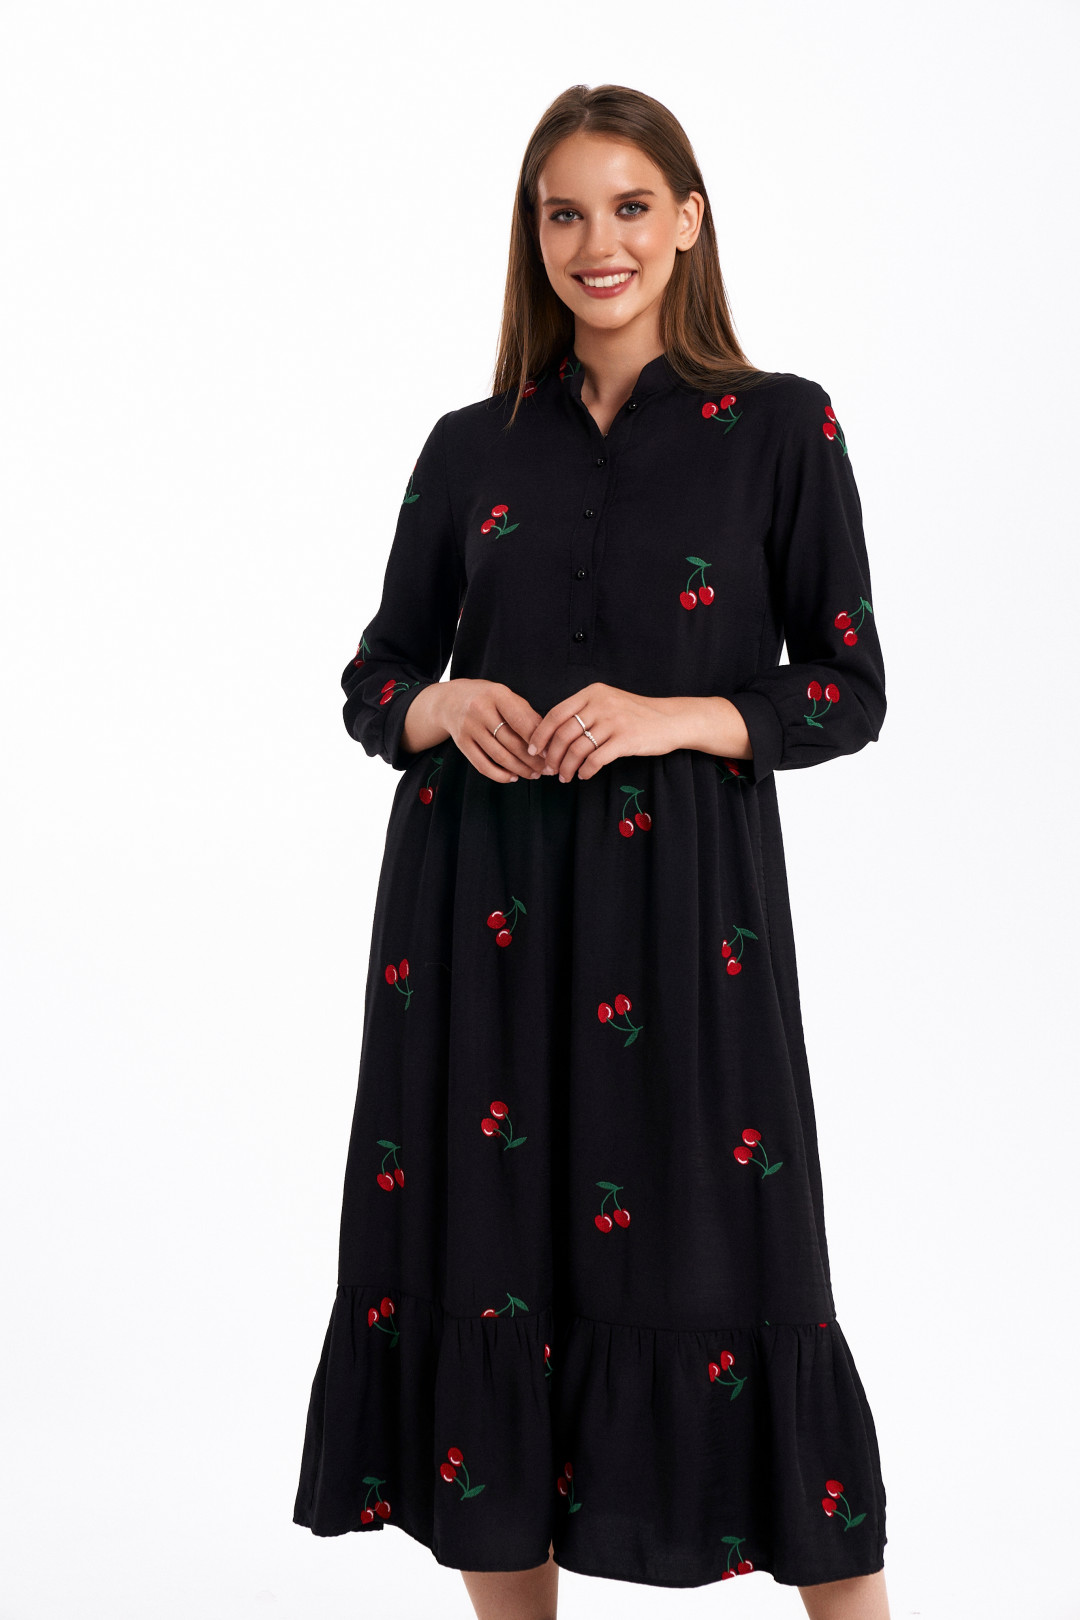 Платье KaVari 1048 черный принт вишня